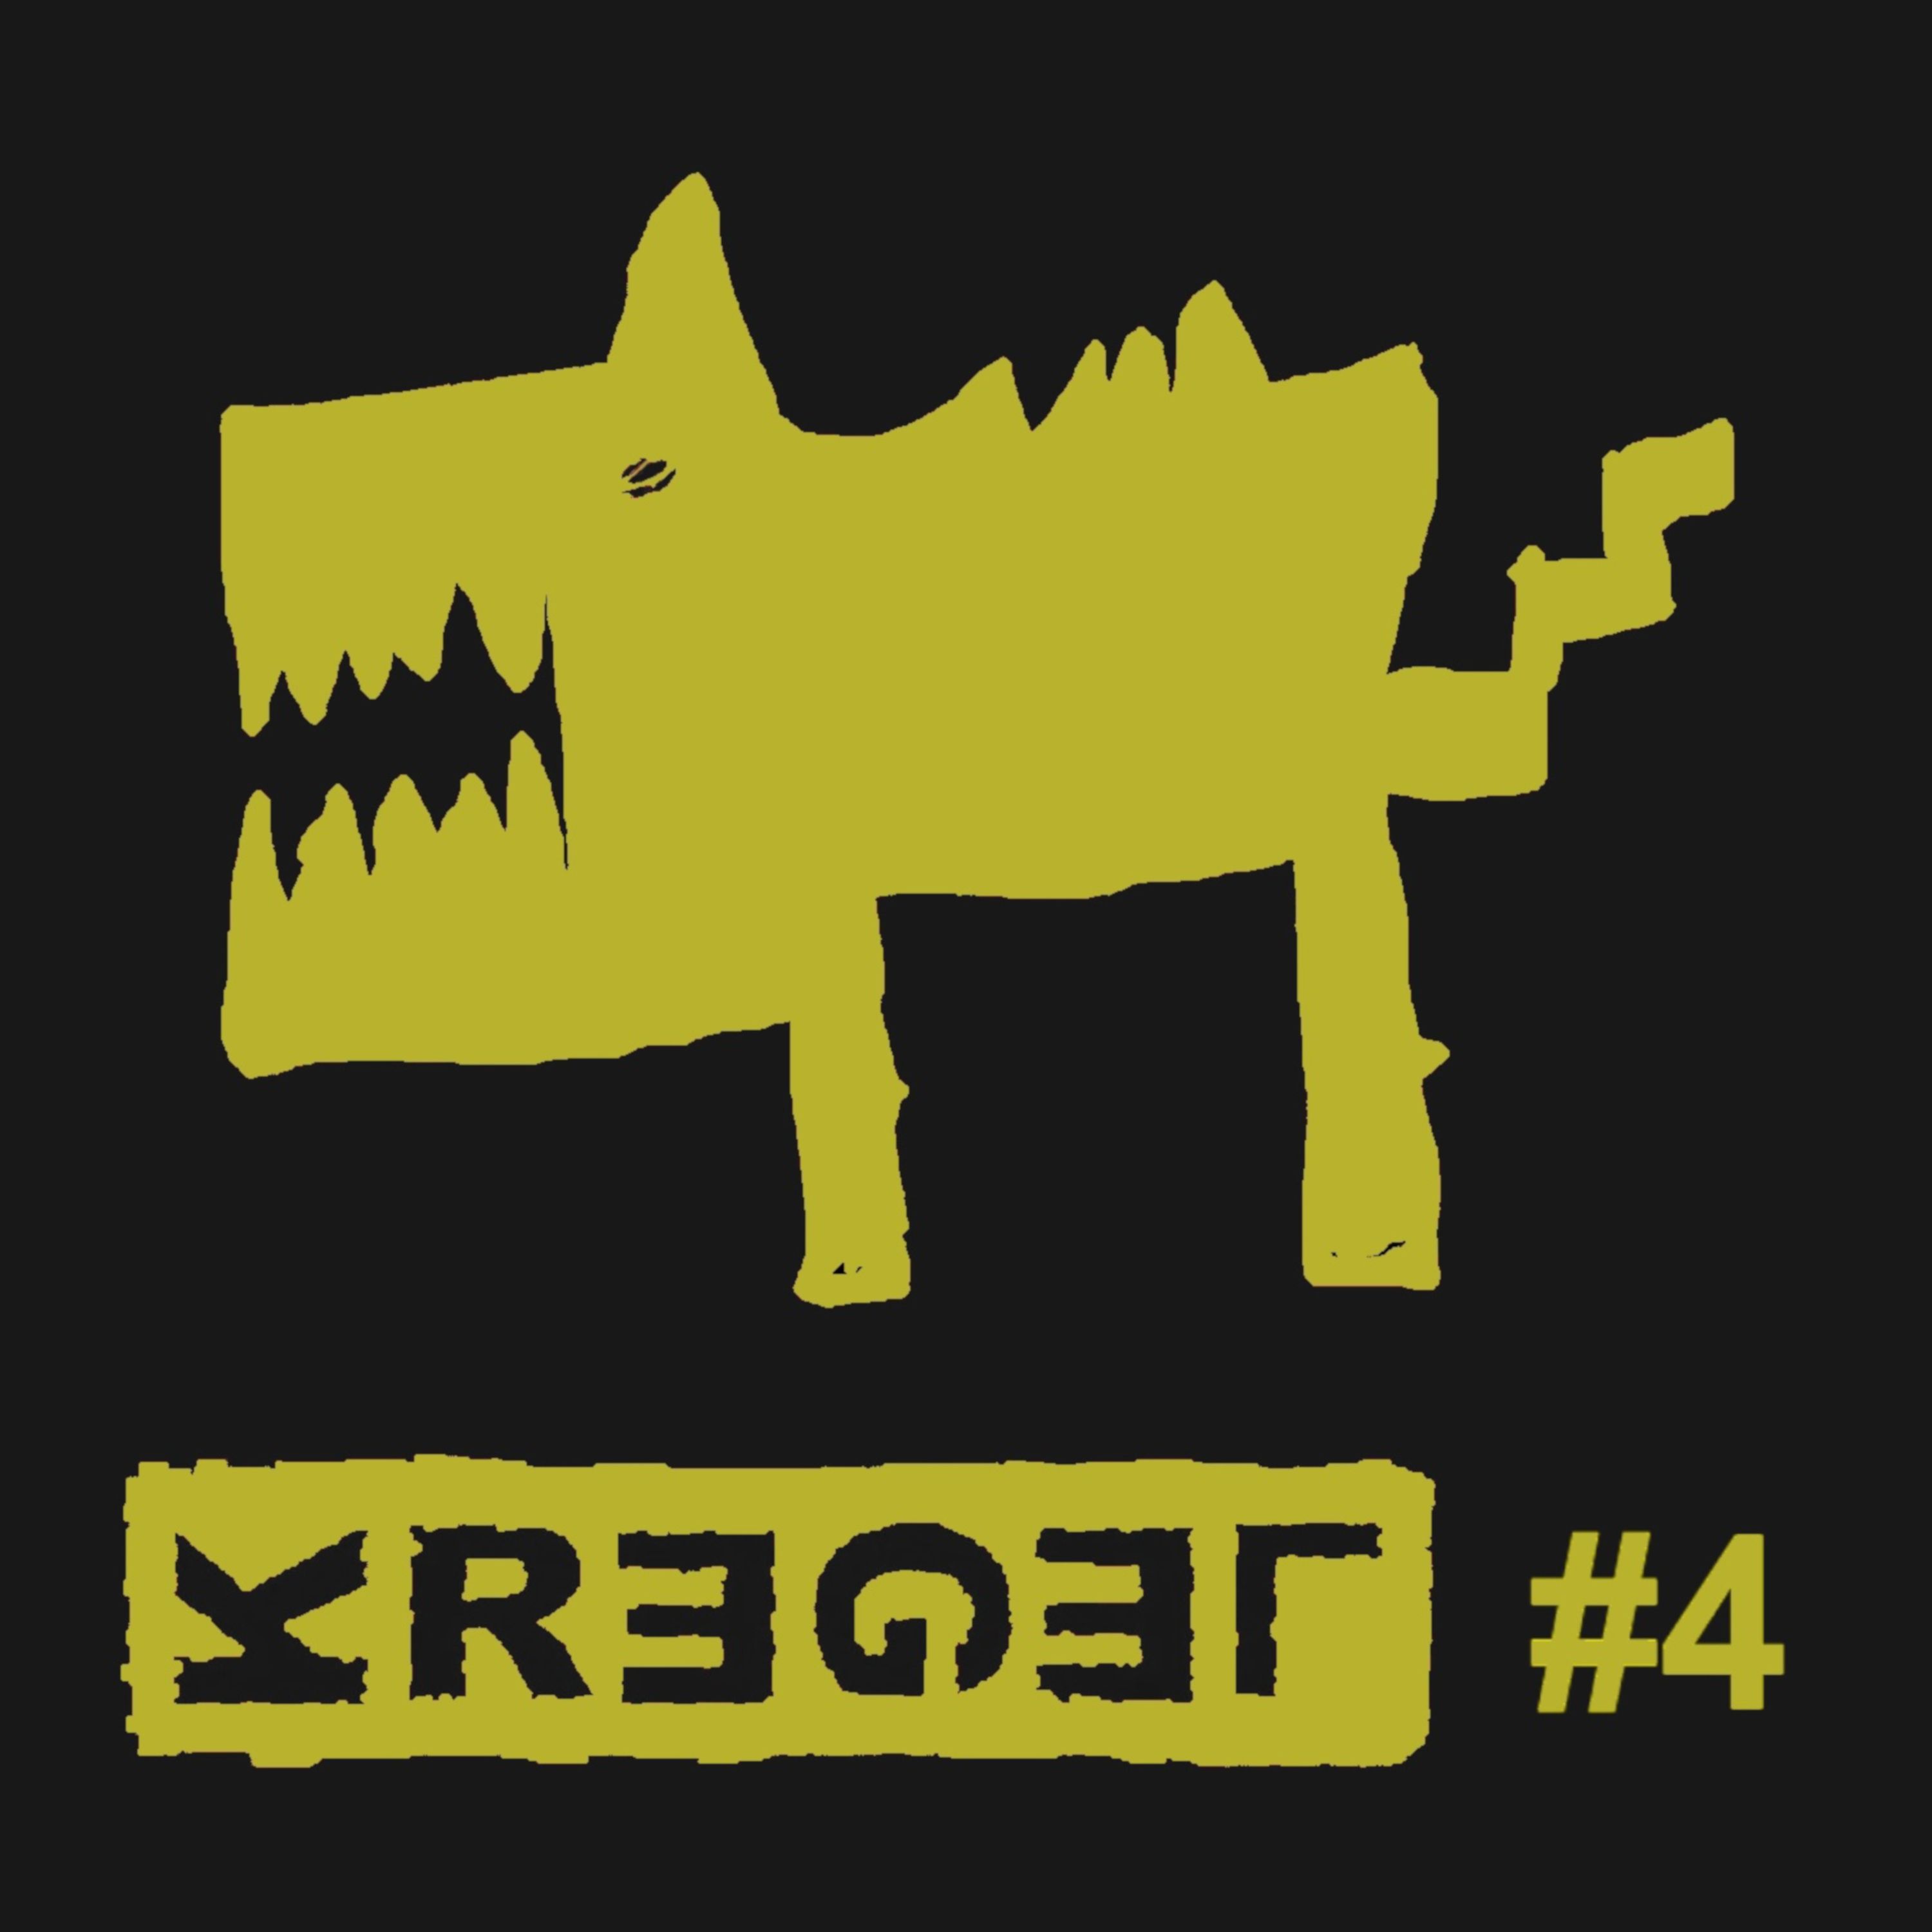 Kregel - #4 front cover